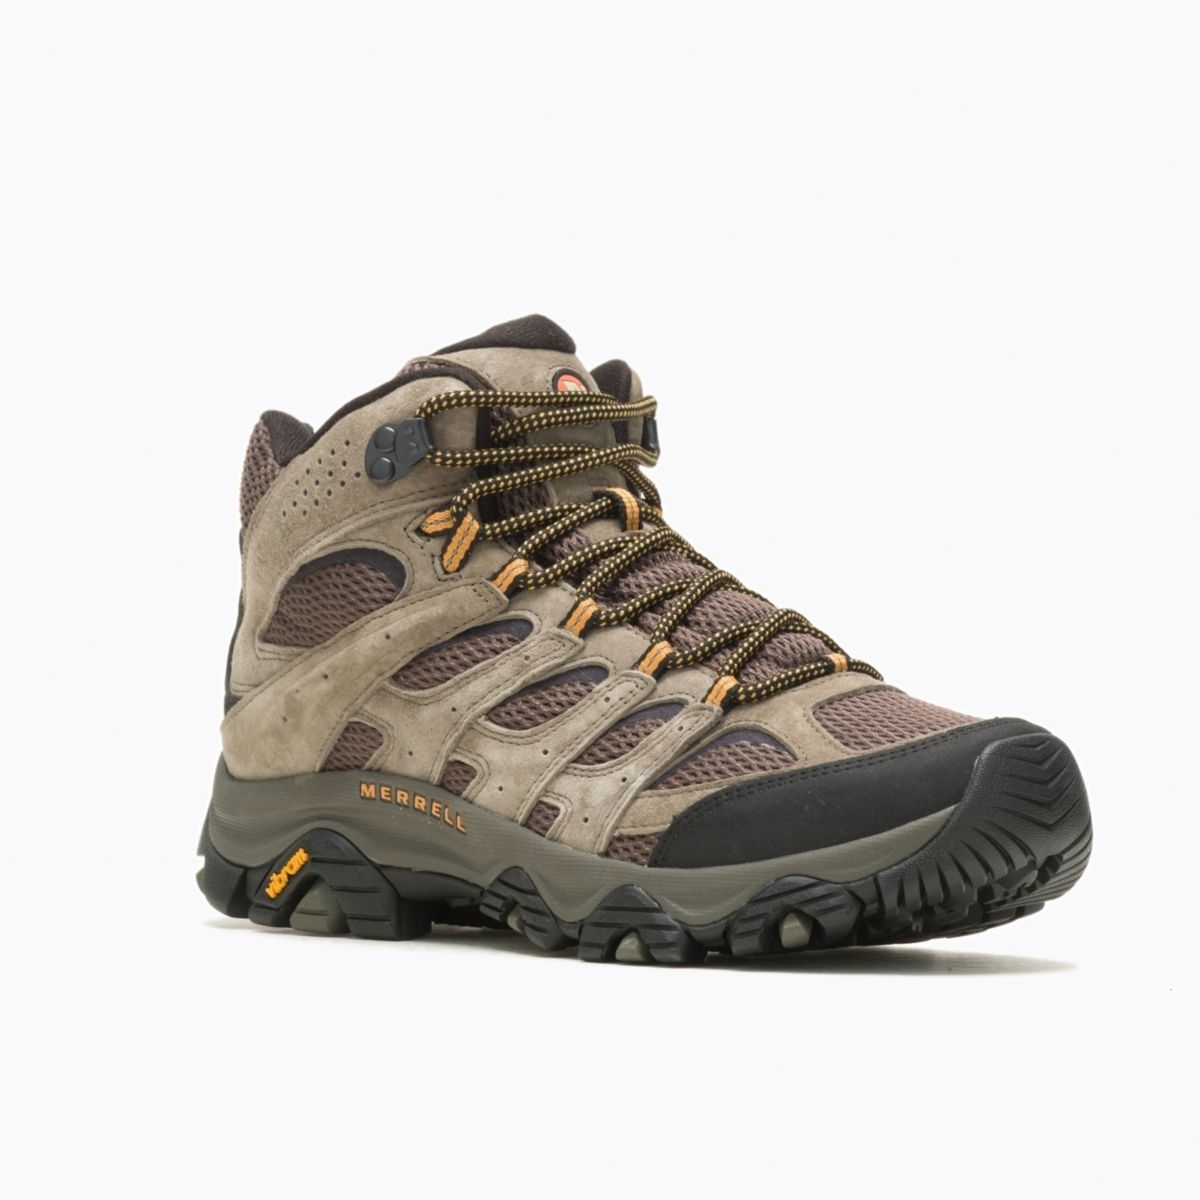 Merrell Men's Moab 3 Mid GORE-TEX Hiking Boot Walnut - J035795 WALNUT - WALNUT, 11